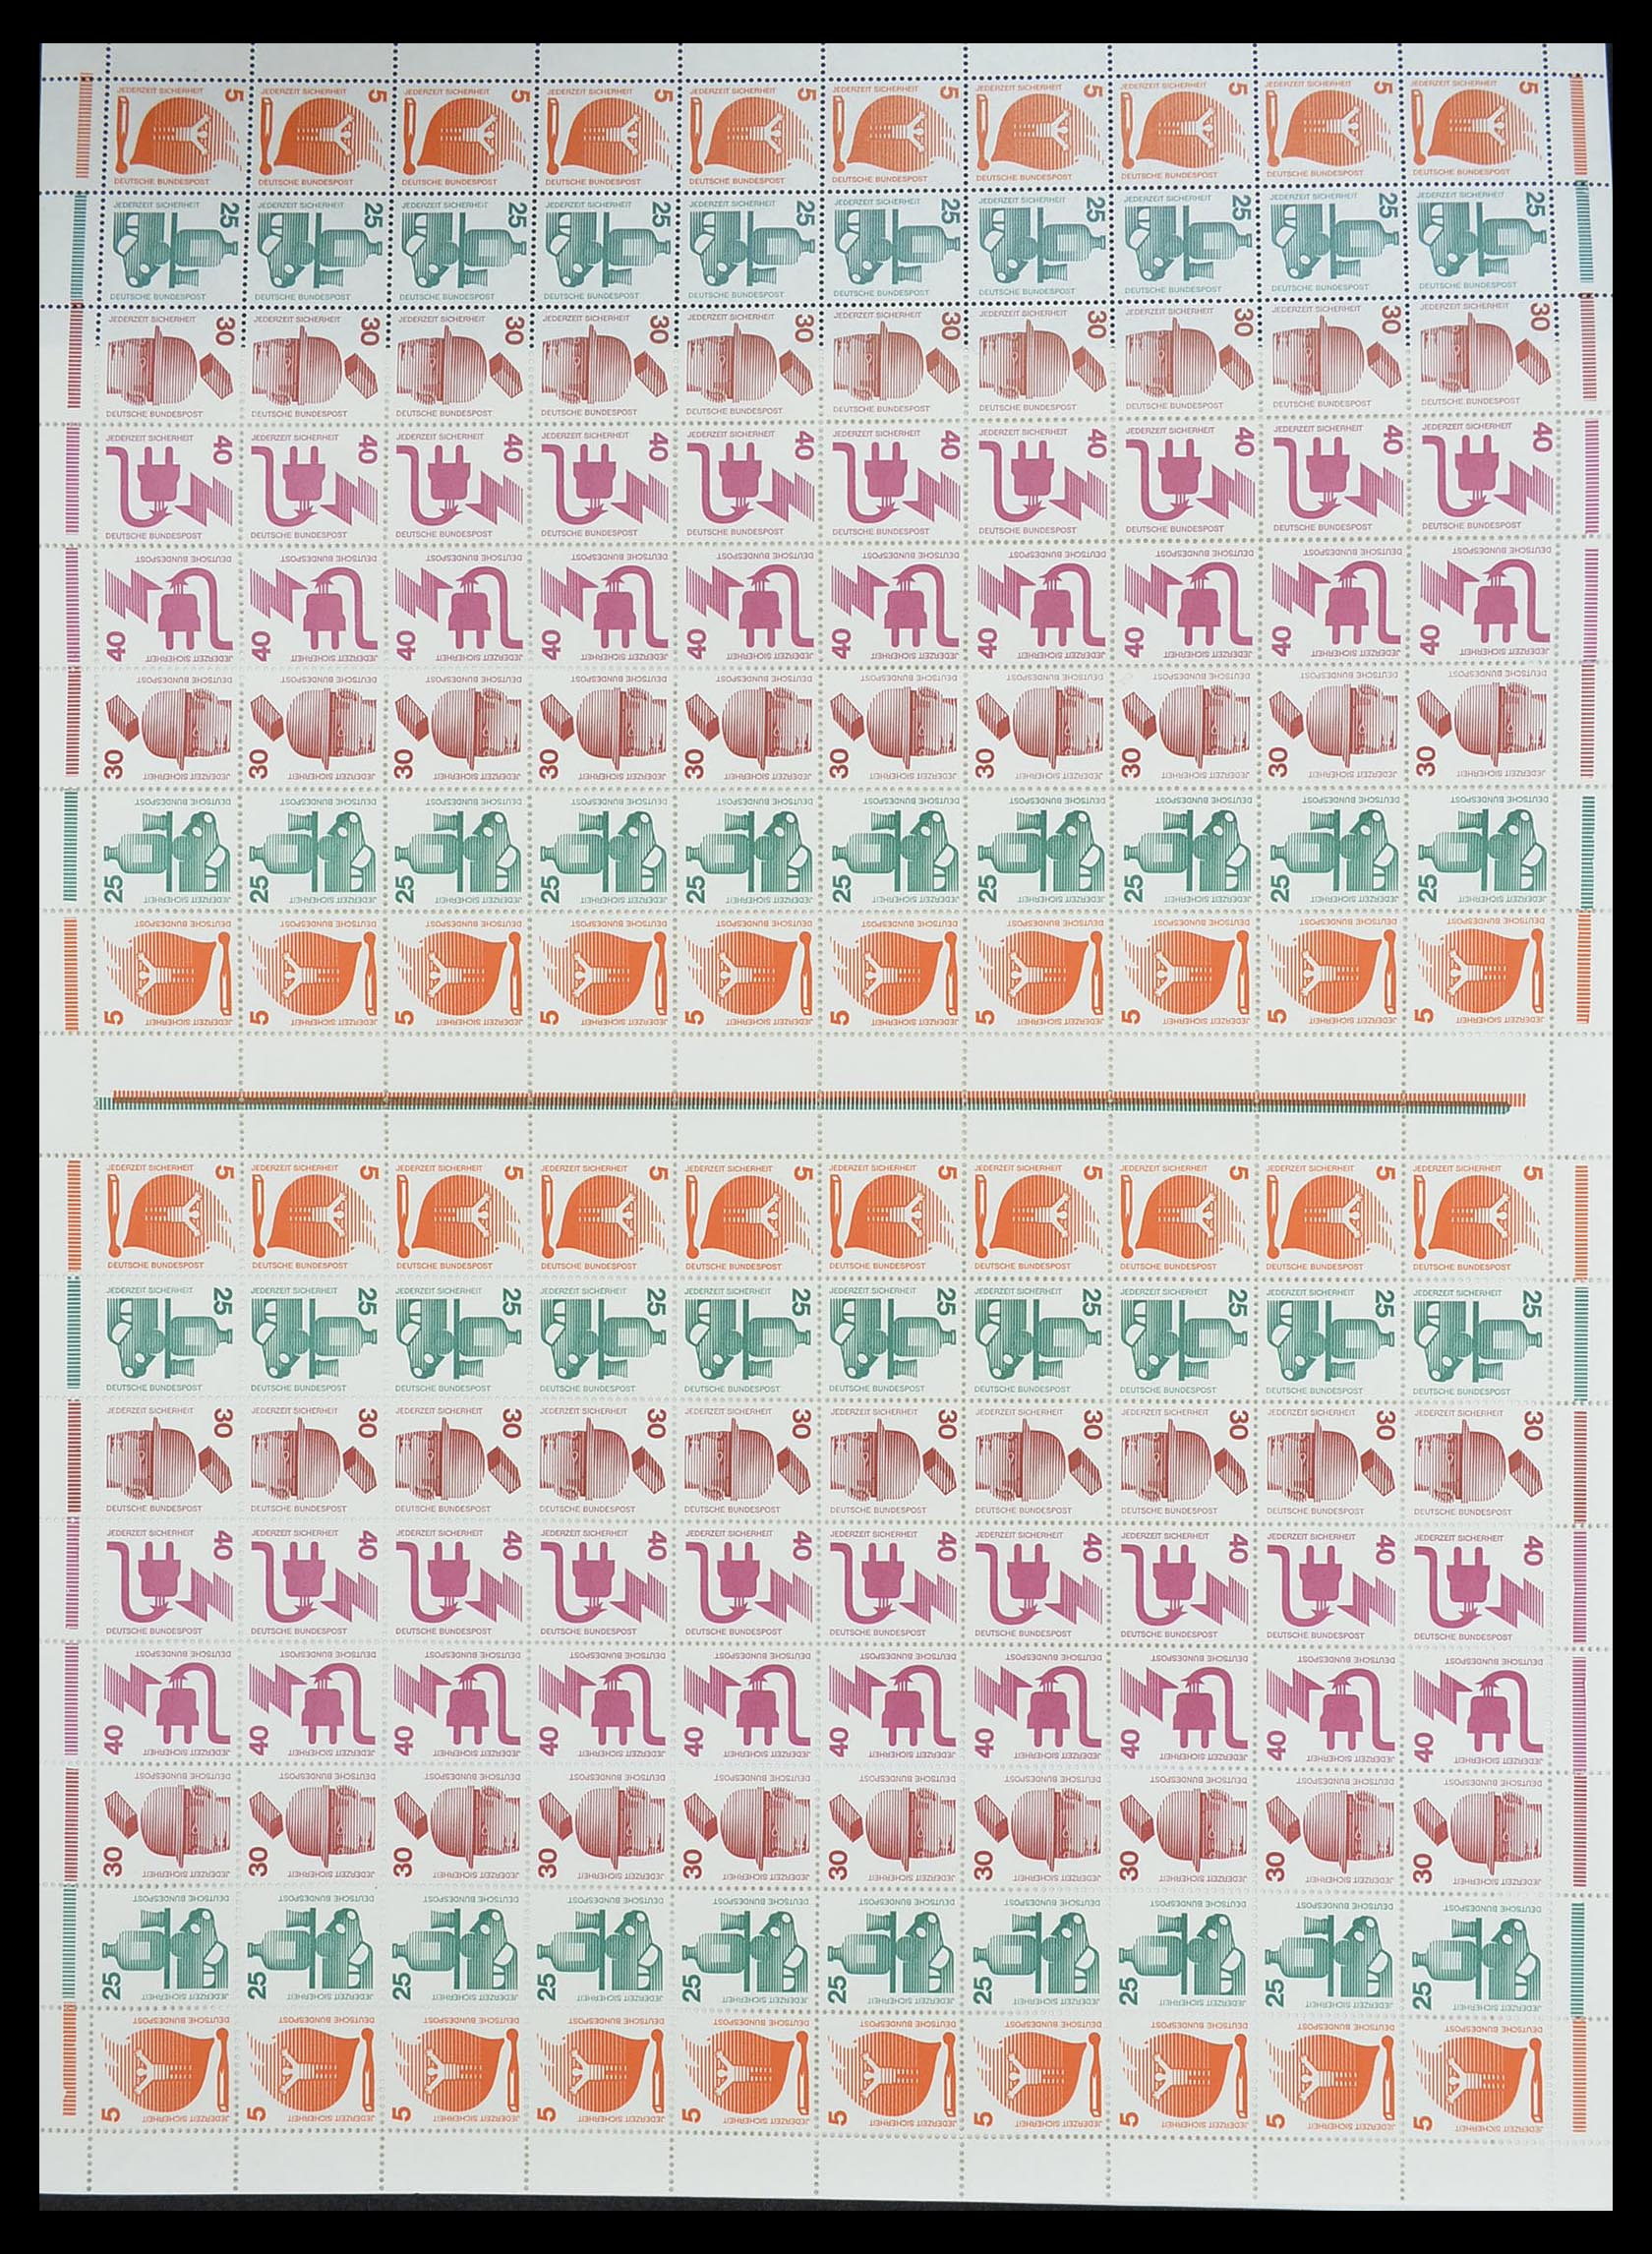 33753 002 - Stamp collection 33753 Bund and Berlin markenheftchenbogen 1966-1973.